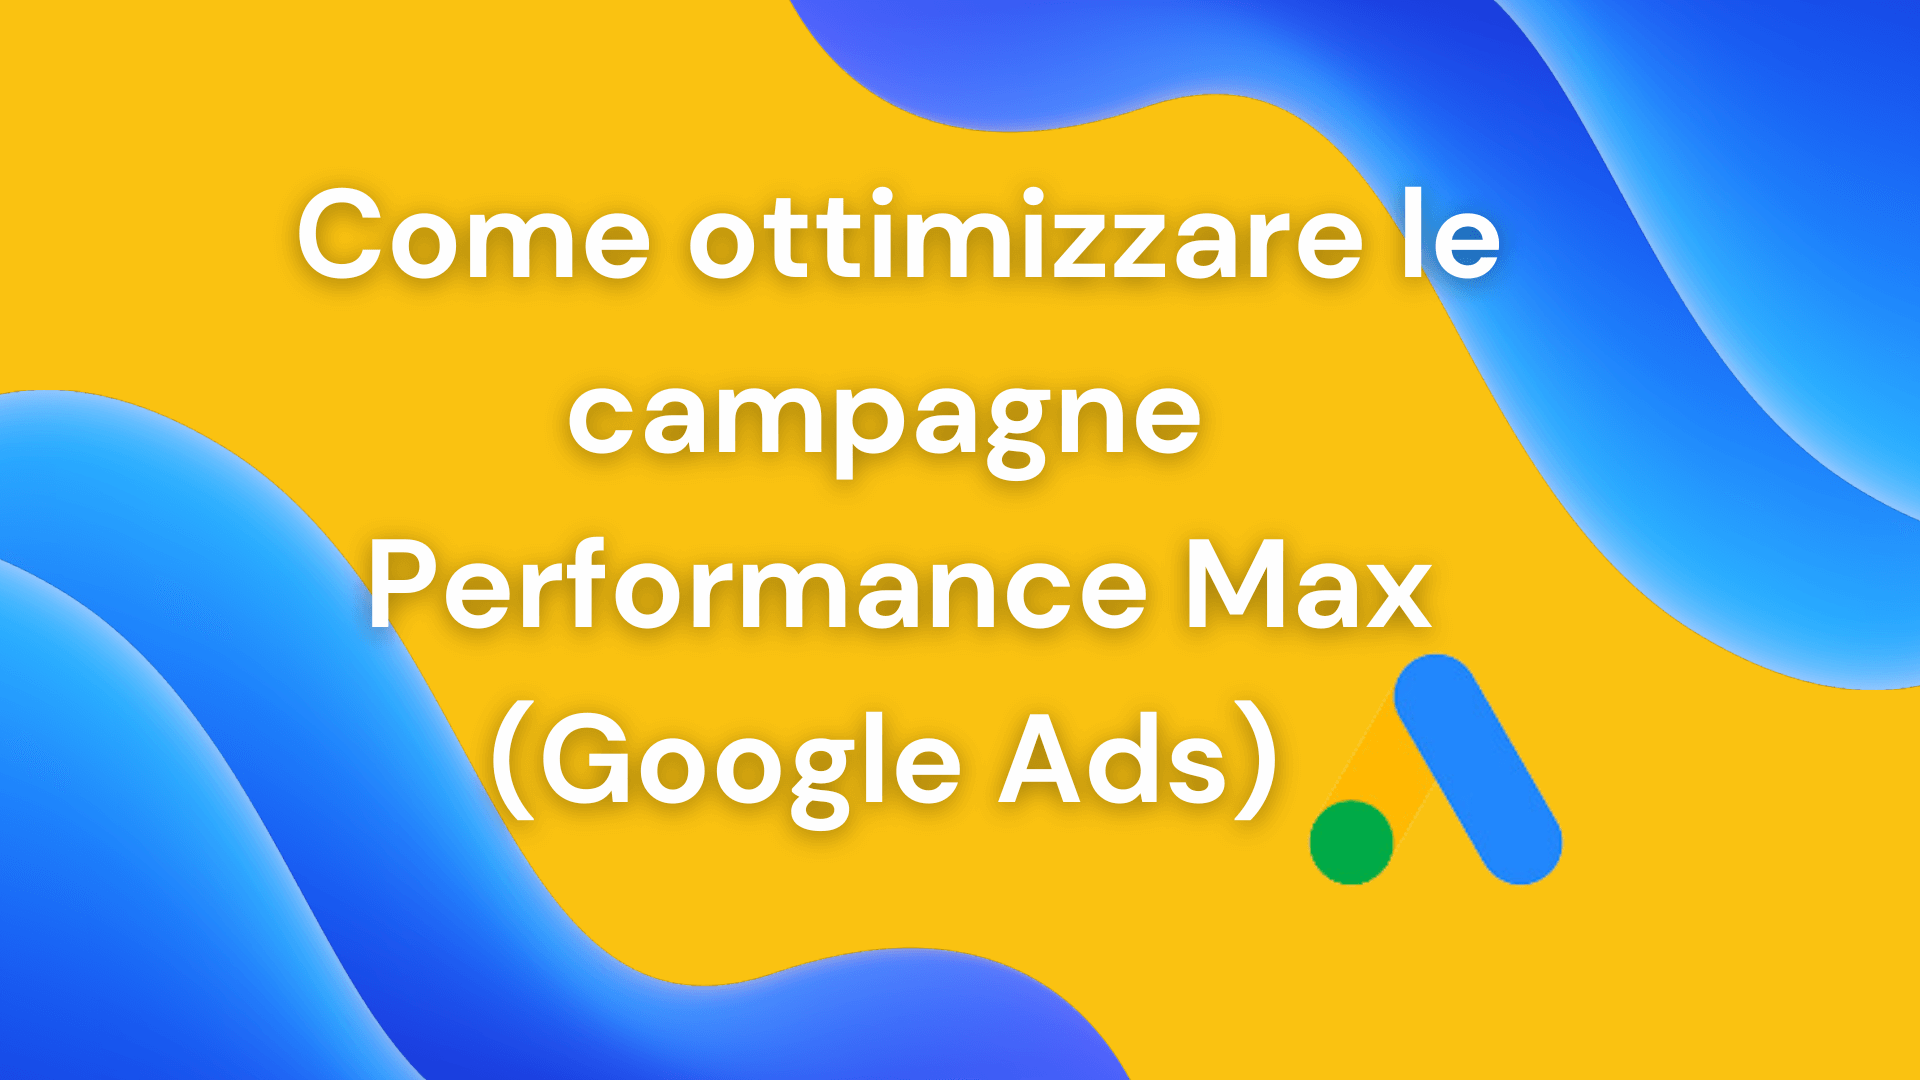 Campagne Performance Max Google: come ottimizzarle